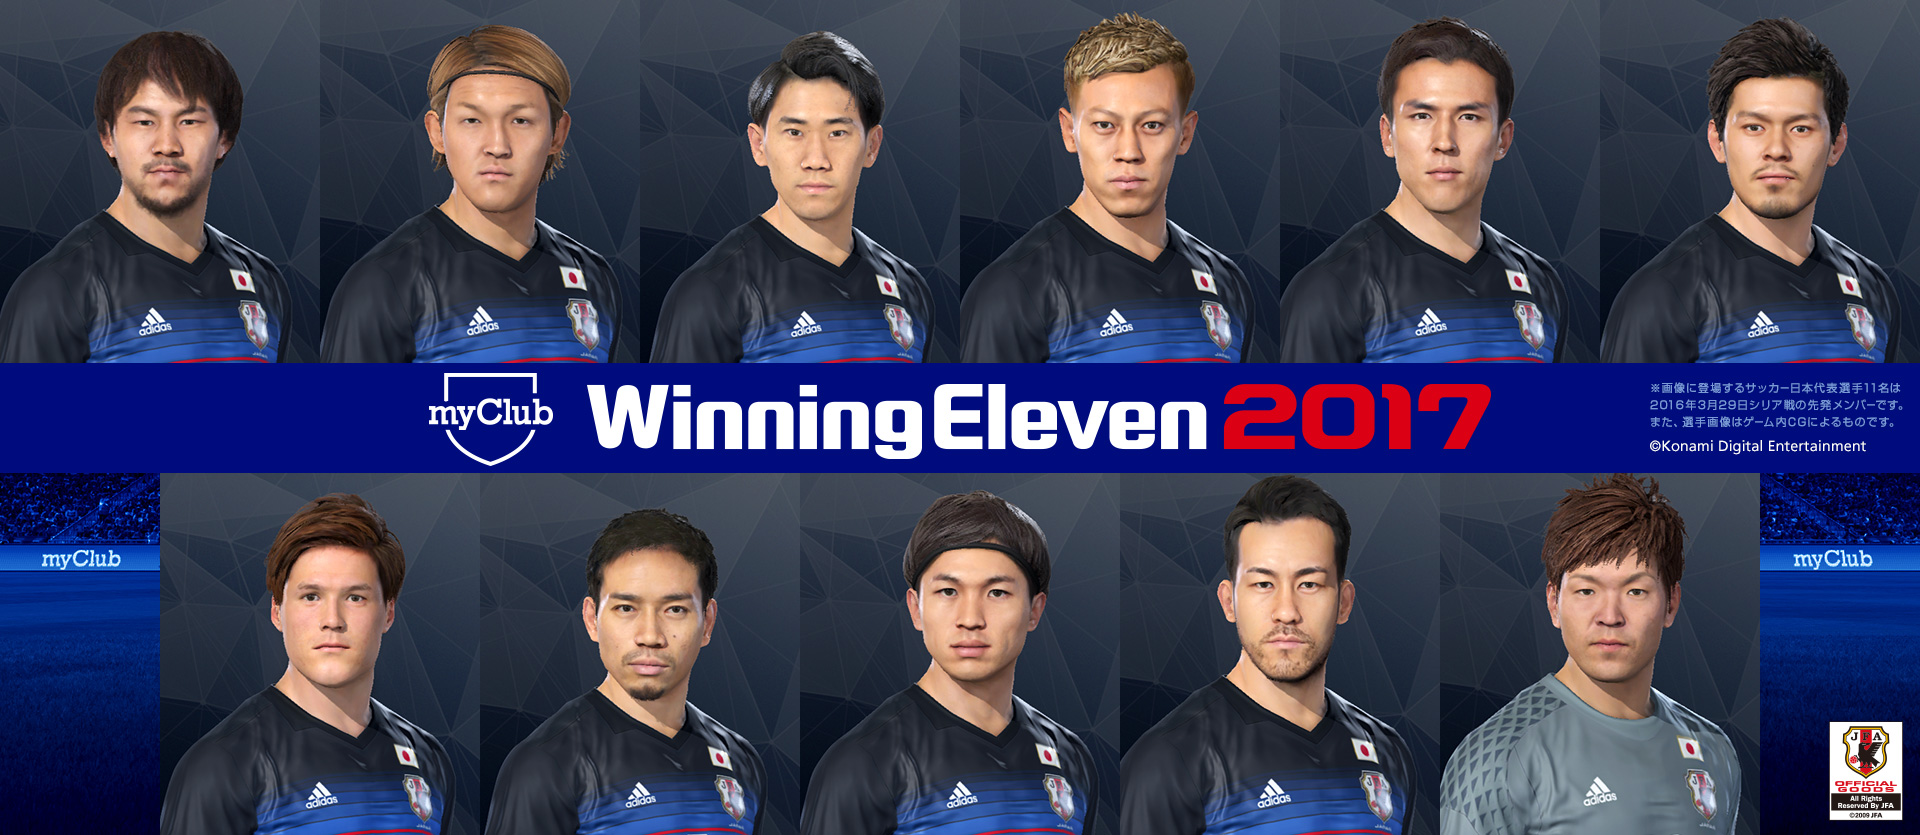 ウイニングイレブン 、サッカー日本代表のフェイスデータを公開